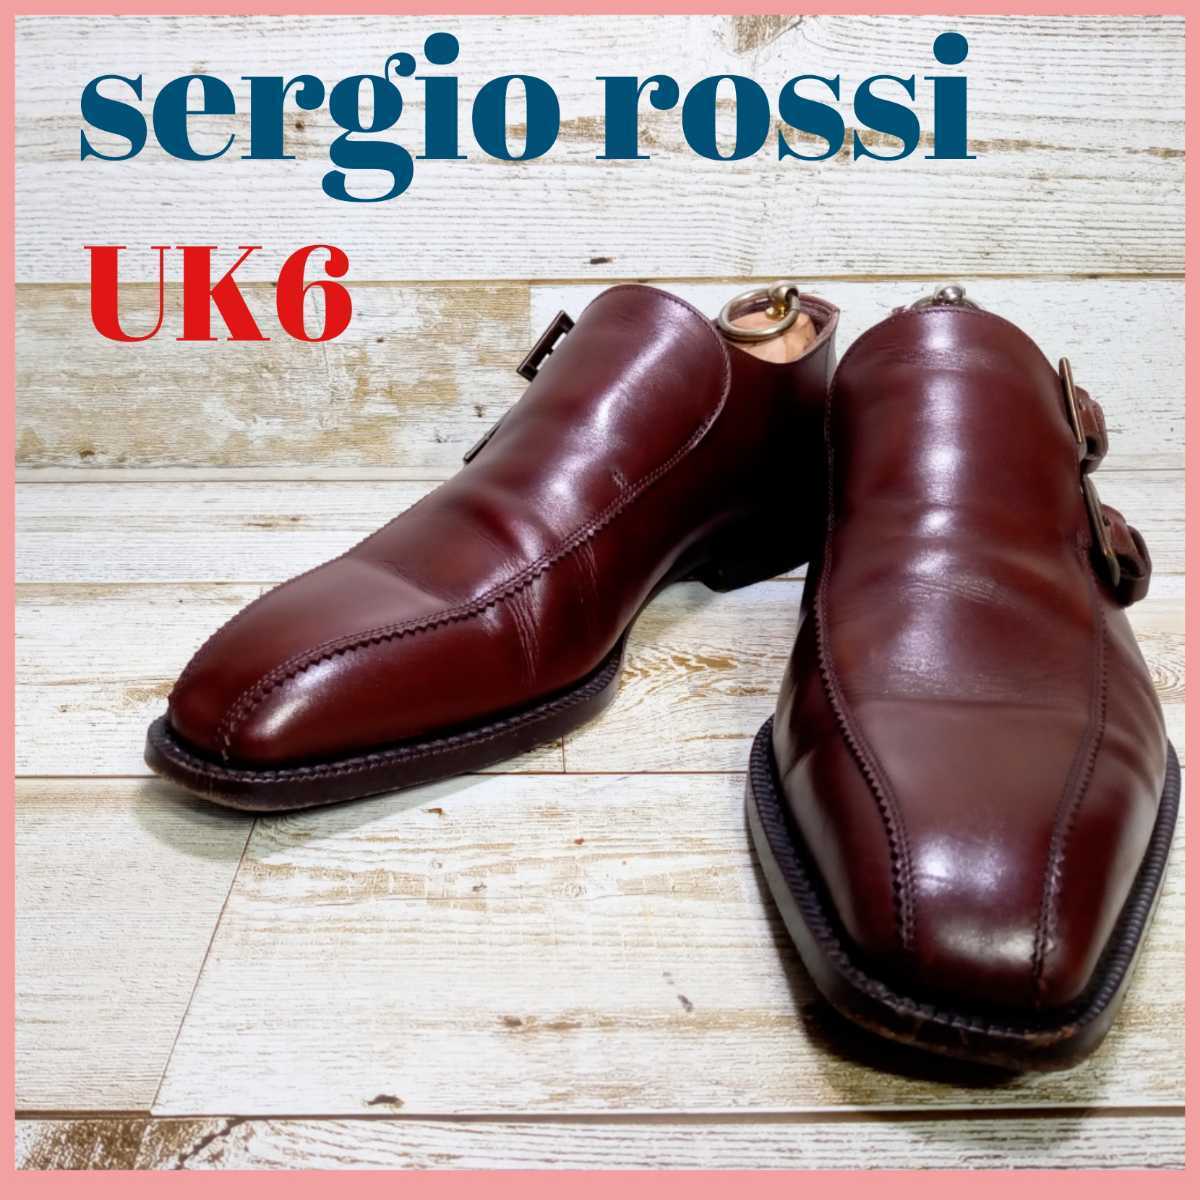 即決 sergio rossi セルジオ ロッシ ダブルモンクストラップ オープニング 大放出セール UK6 革靴 本革 ダークブラウン ビジネスシューズ 倉庫 ドレスシューズ 24.5cm相当